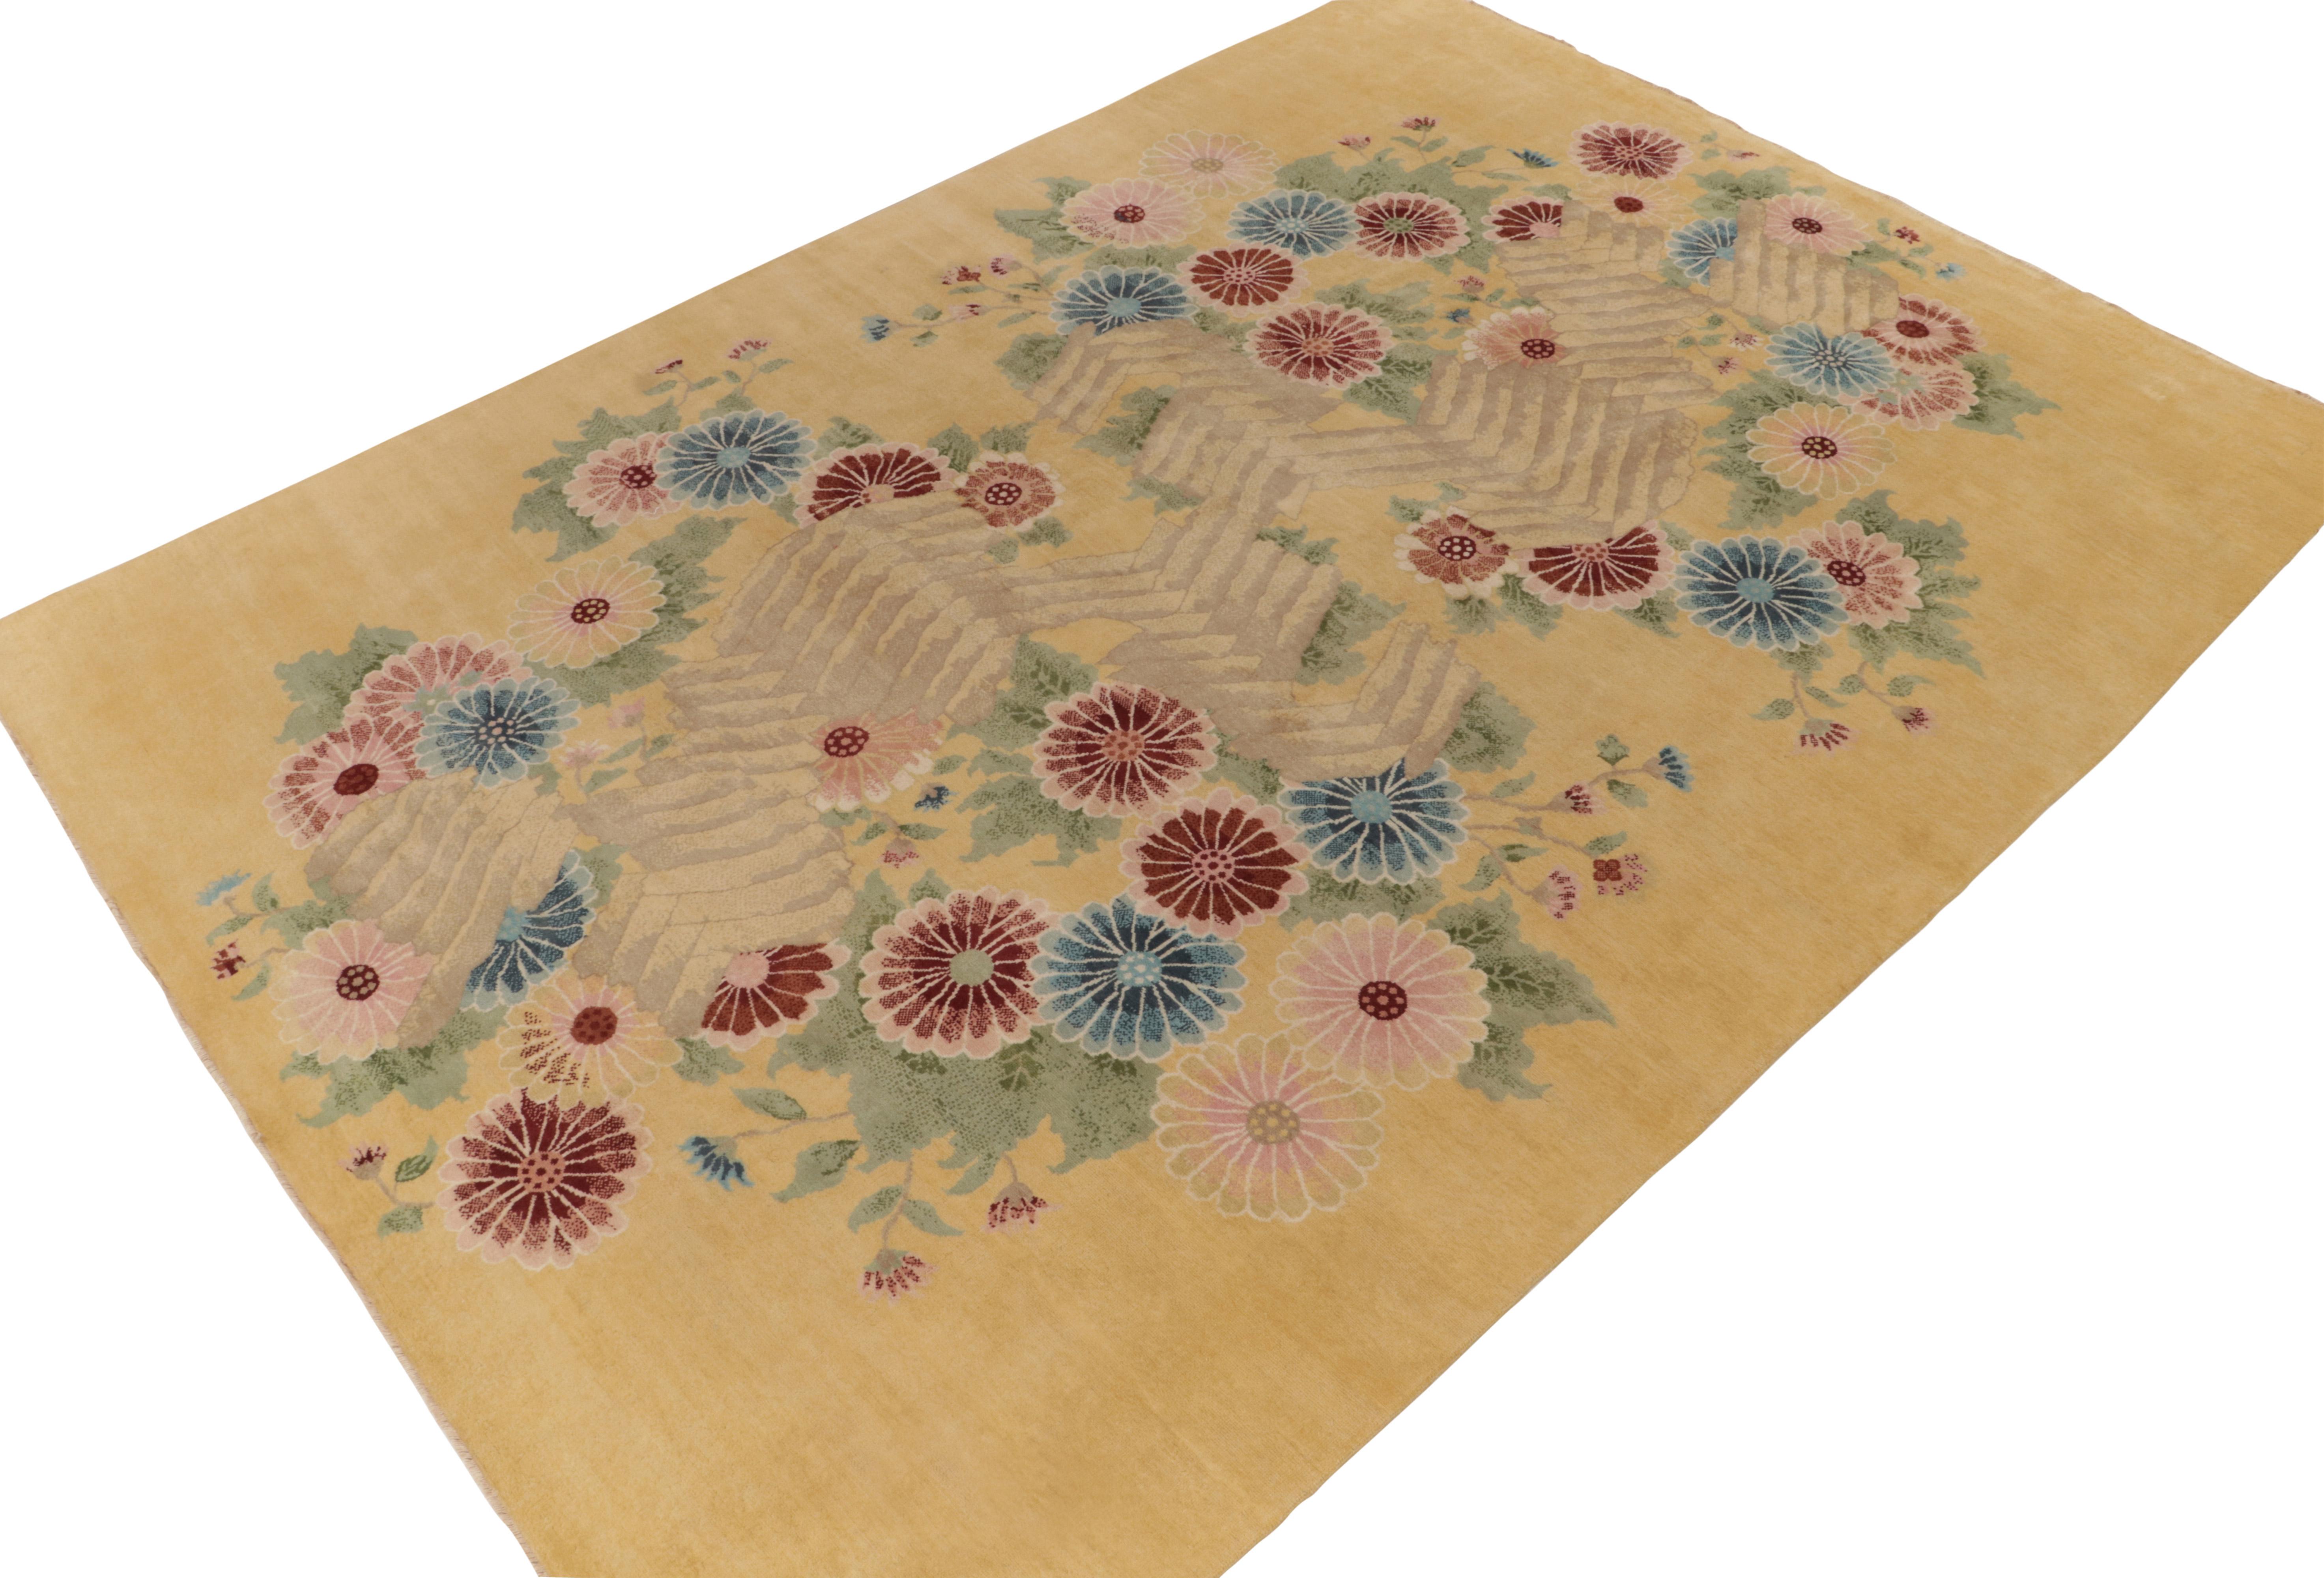 Noué à la main en laine, ce tapis 10x14 est une ode aux styles déco français. Il fait partie de la nouvelle Collection Deco de Rug & Kilim. 

Concernant le design/One : Cette pièce présente un motif floral très inhabituel dans les tons bleu, rouge